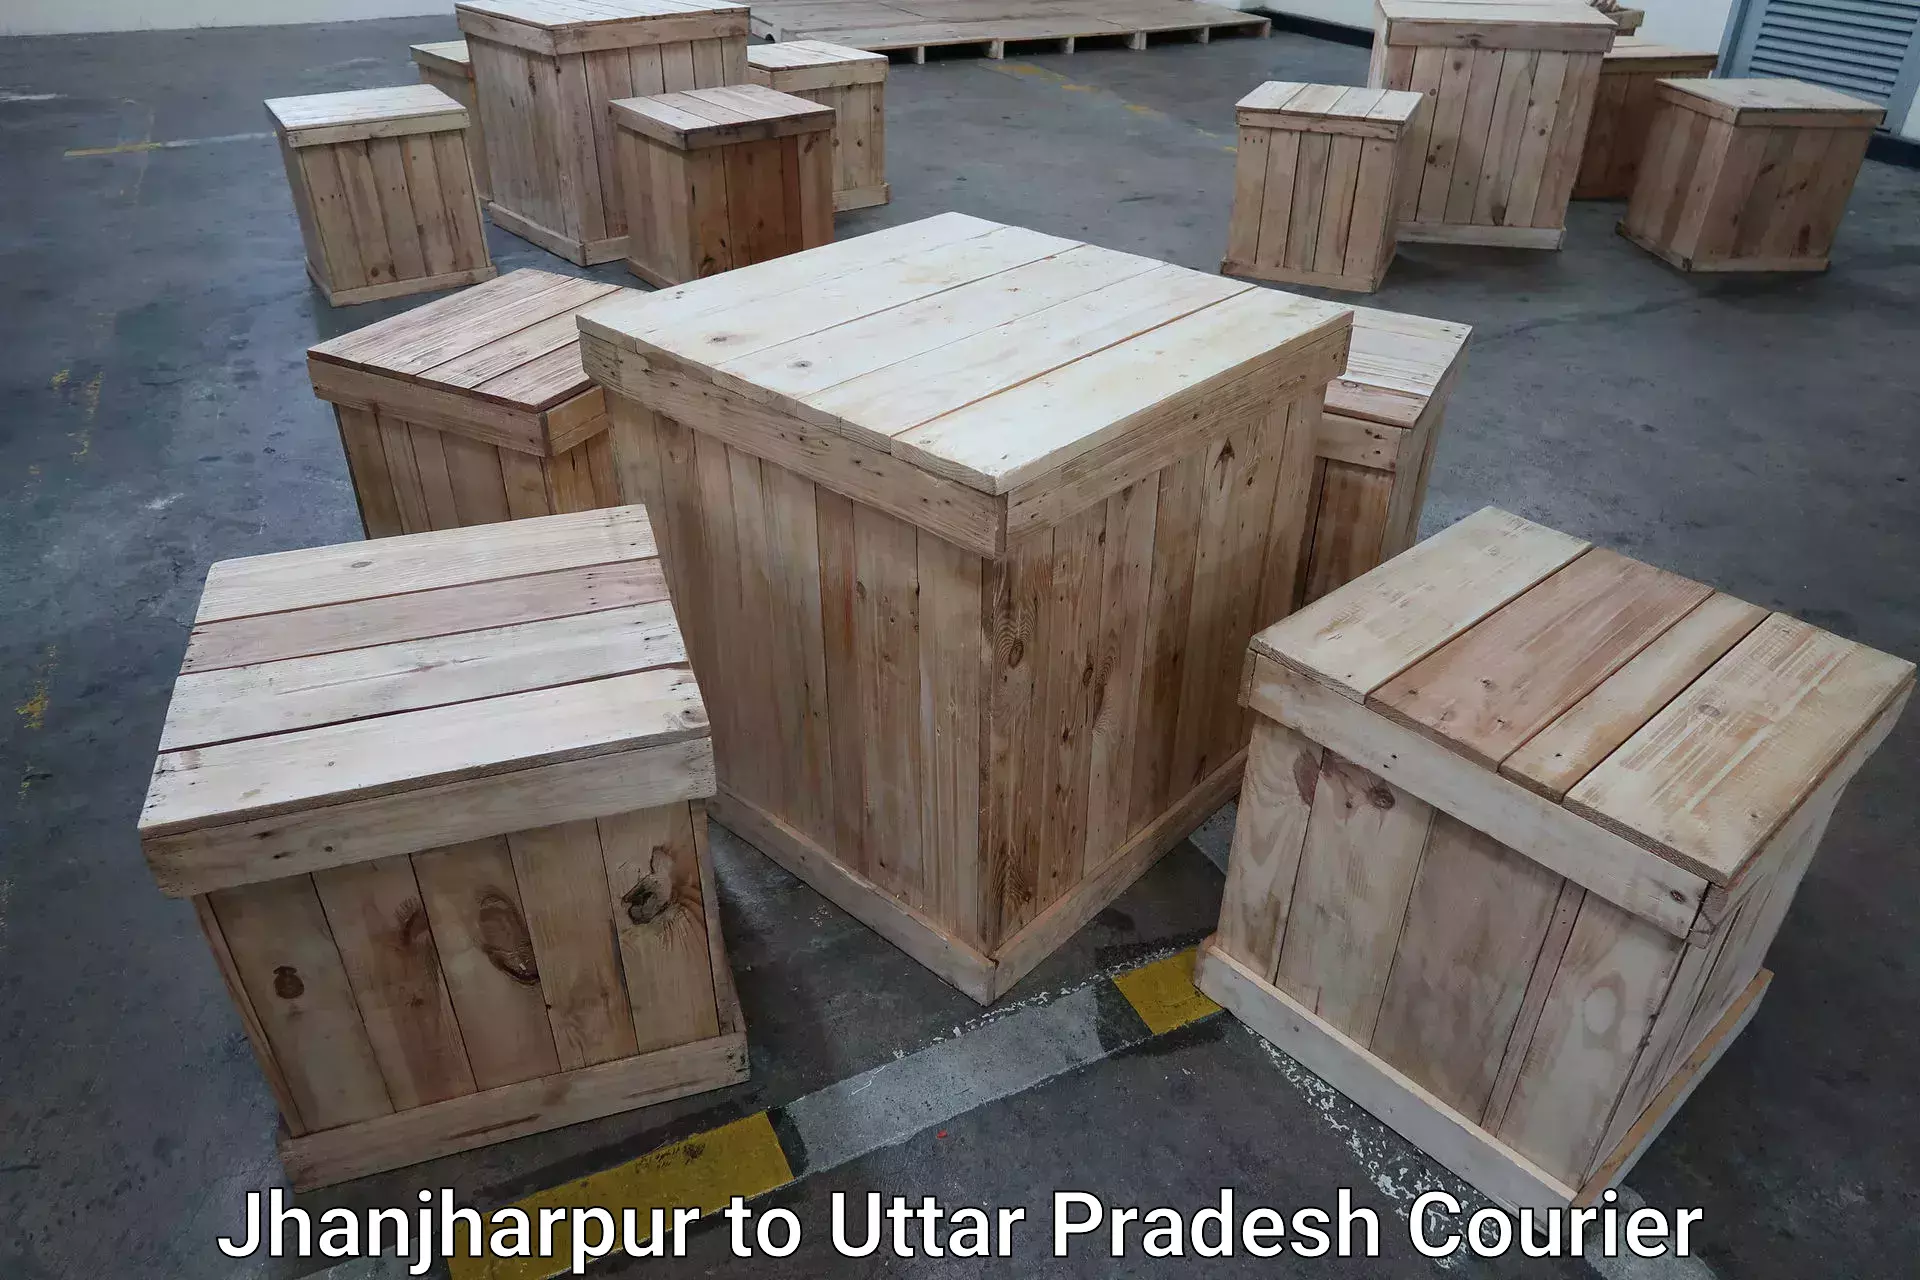 Global baggage shipping Jhanjharpur to Varanasi